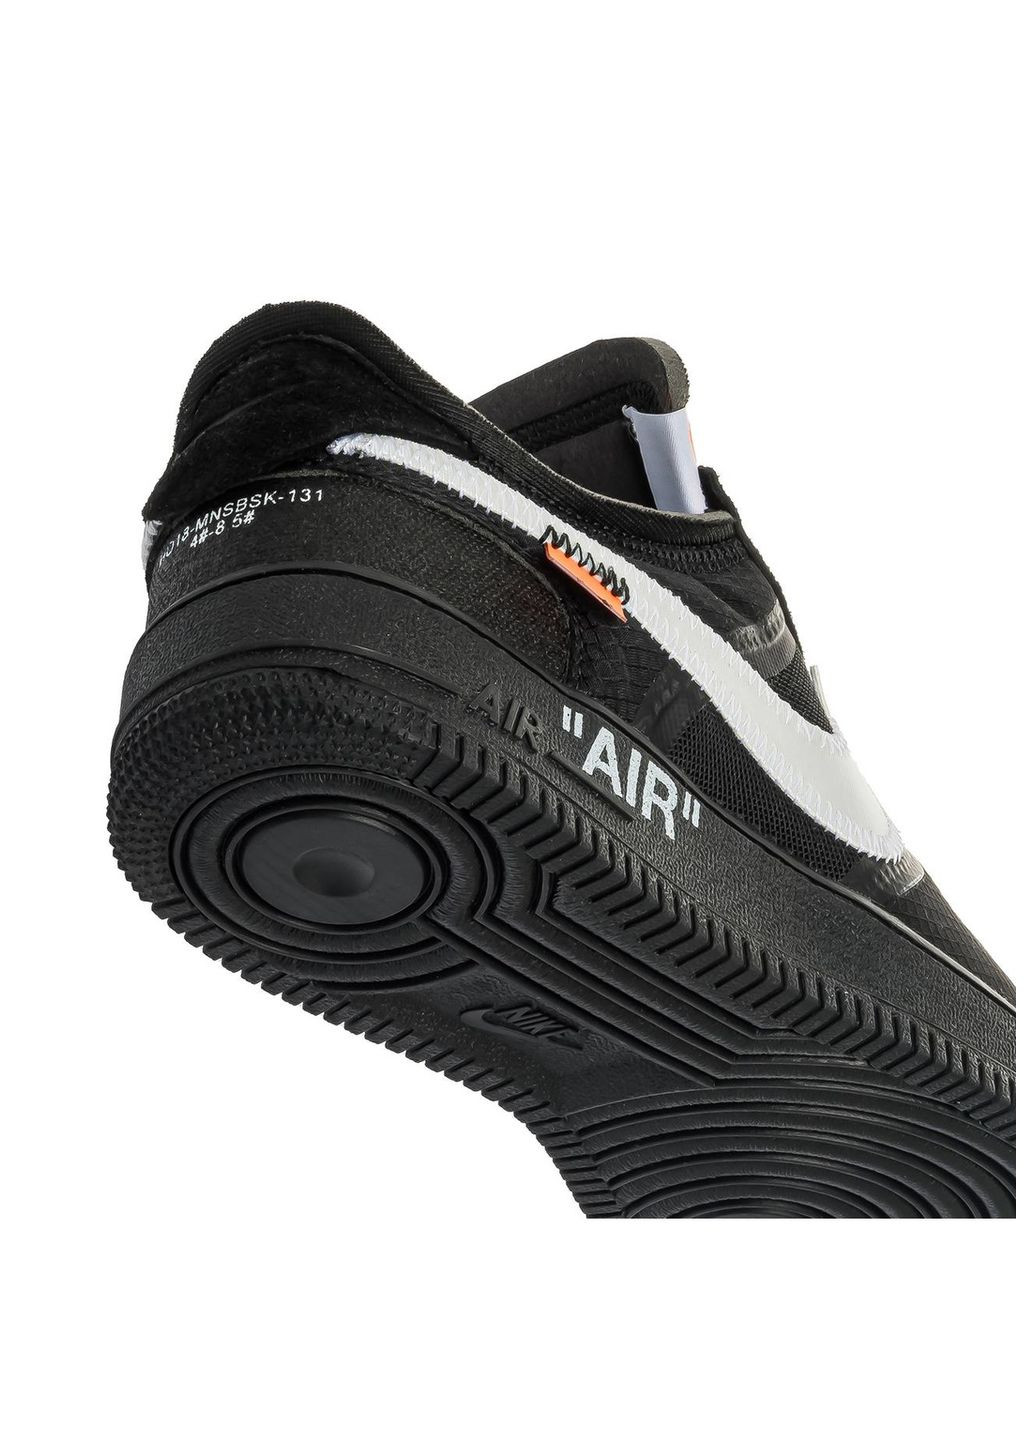 Черные демисезонные кроссовки мужские x off white 1 low black, вьетнам Nike Air Force